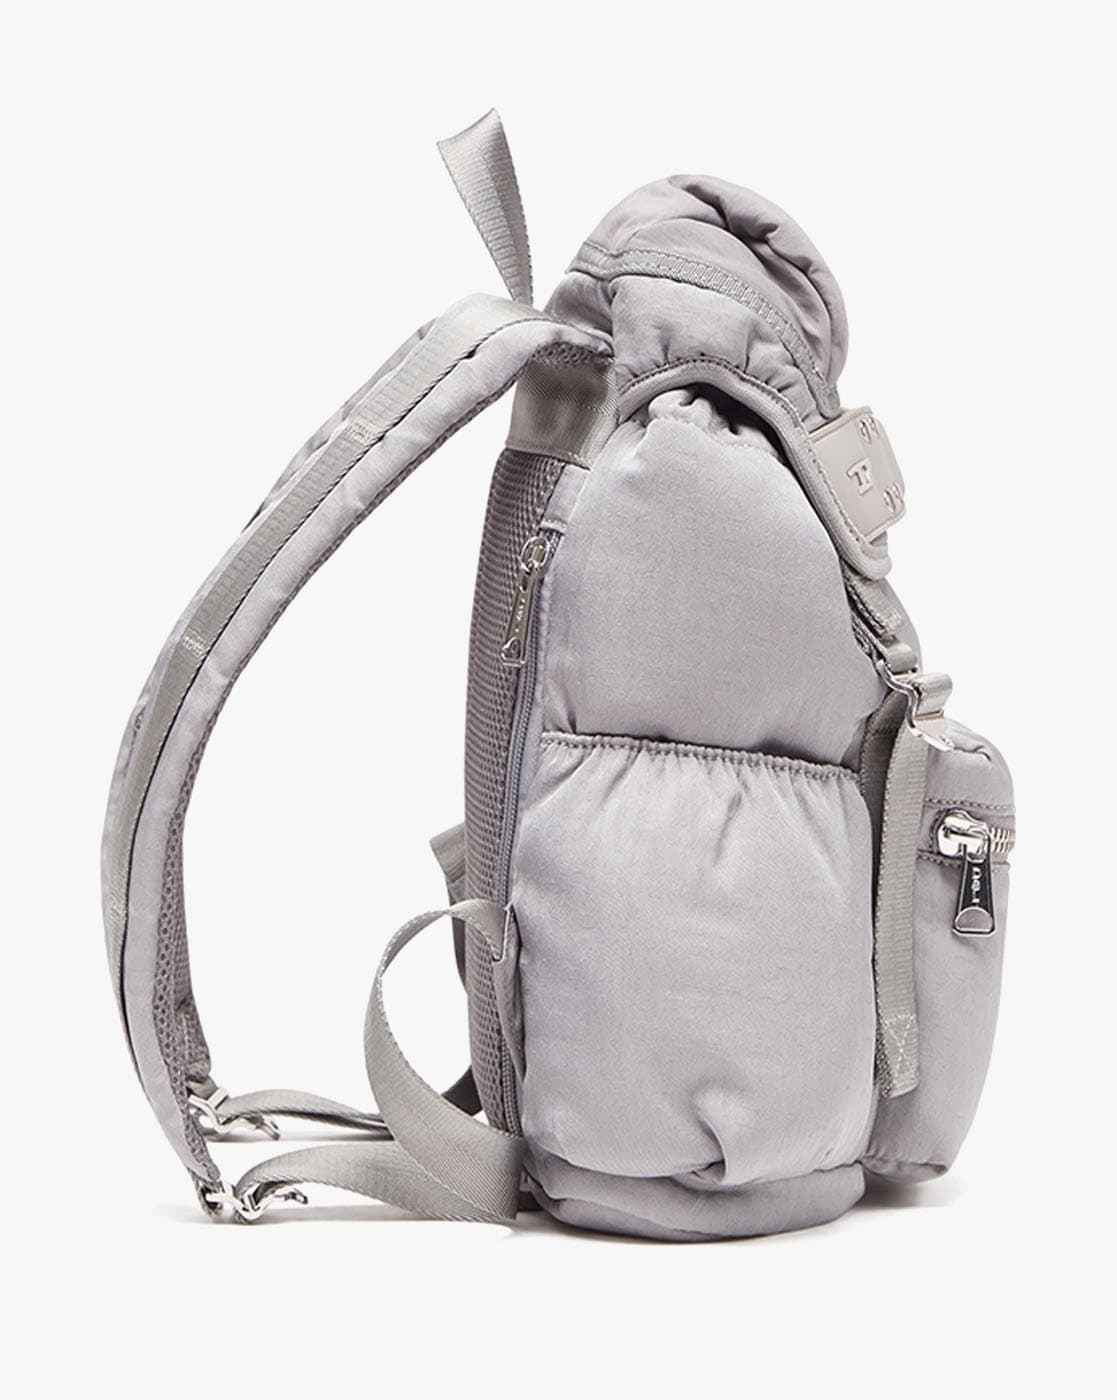 Men's Backpacks: leather, zippered, PC holder